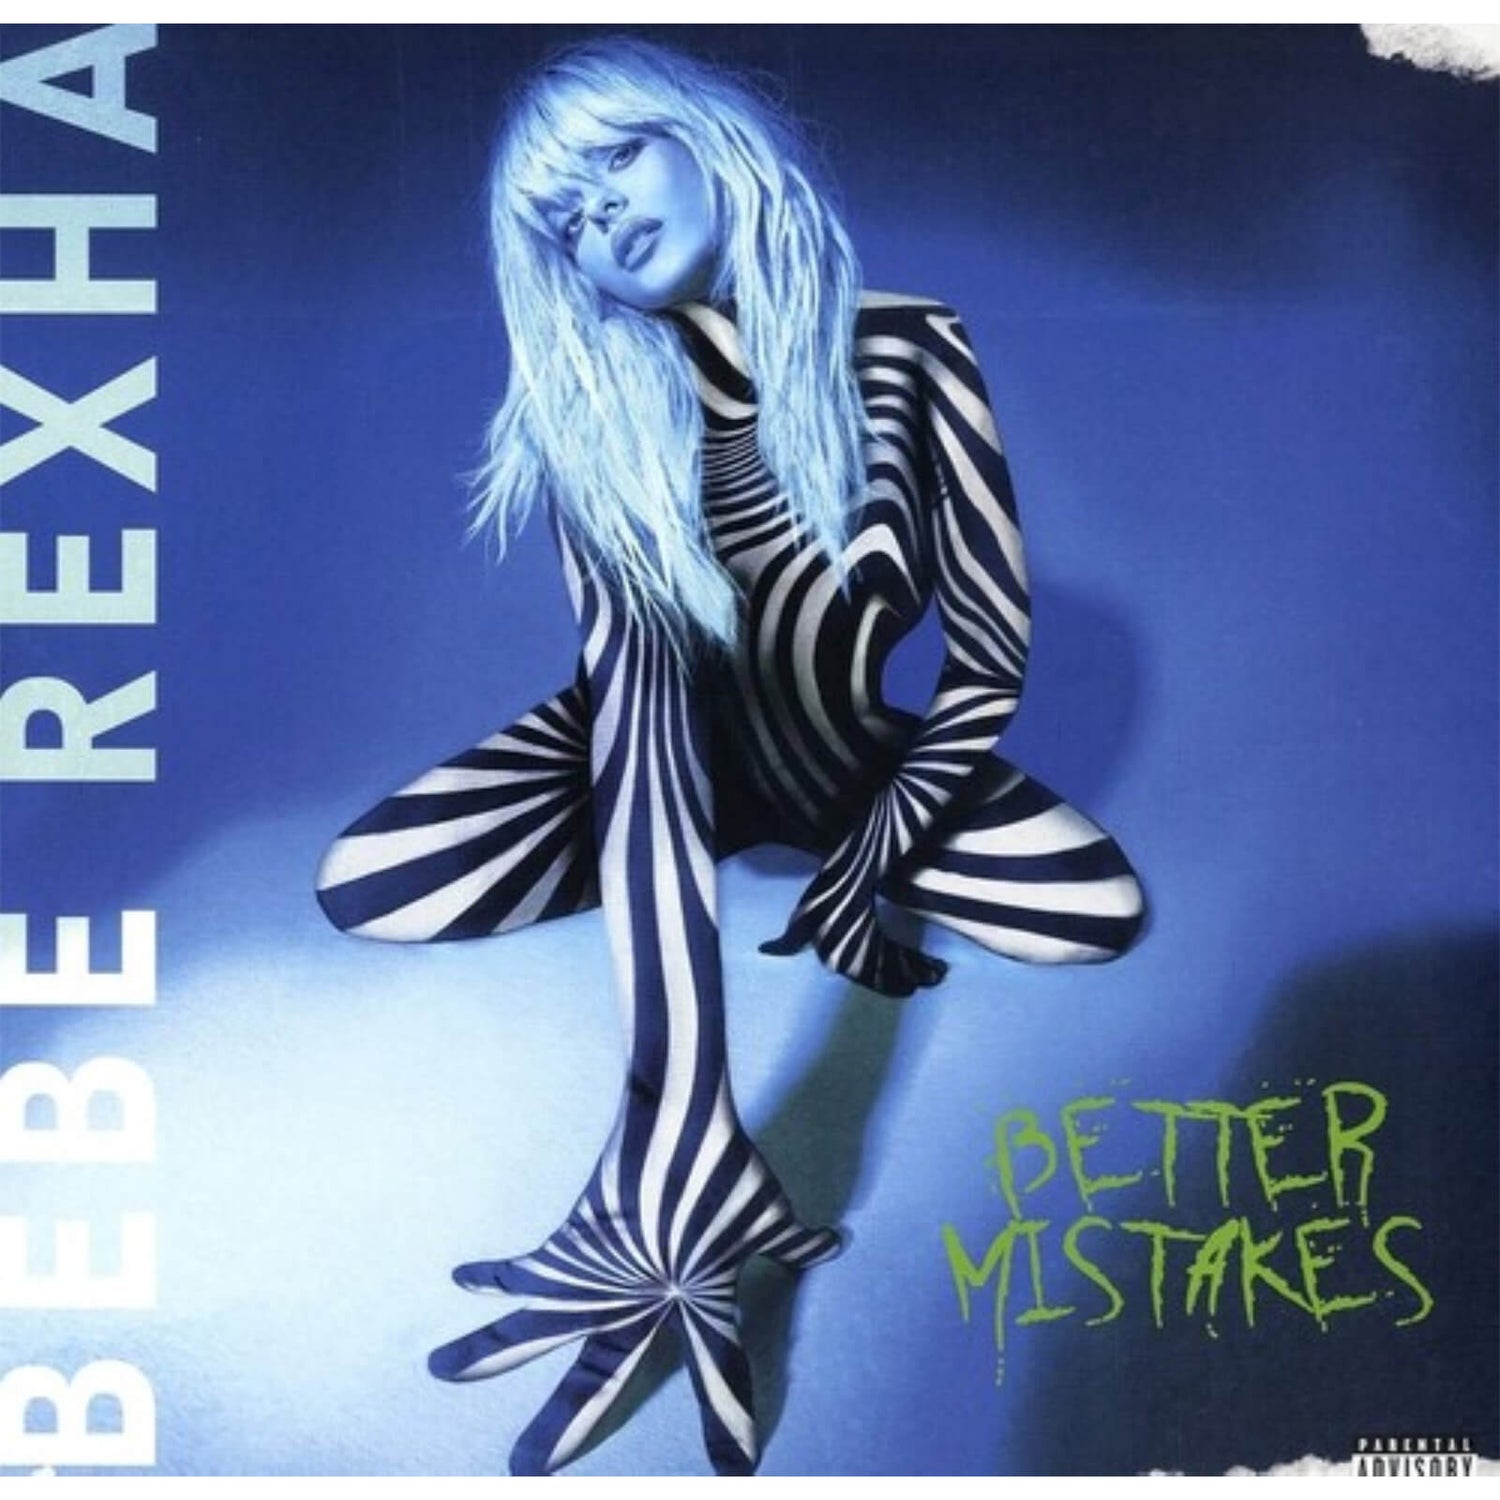 Bebe Rexha - Better Mistakes Vinyl